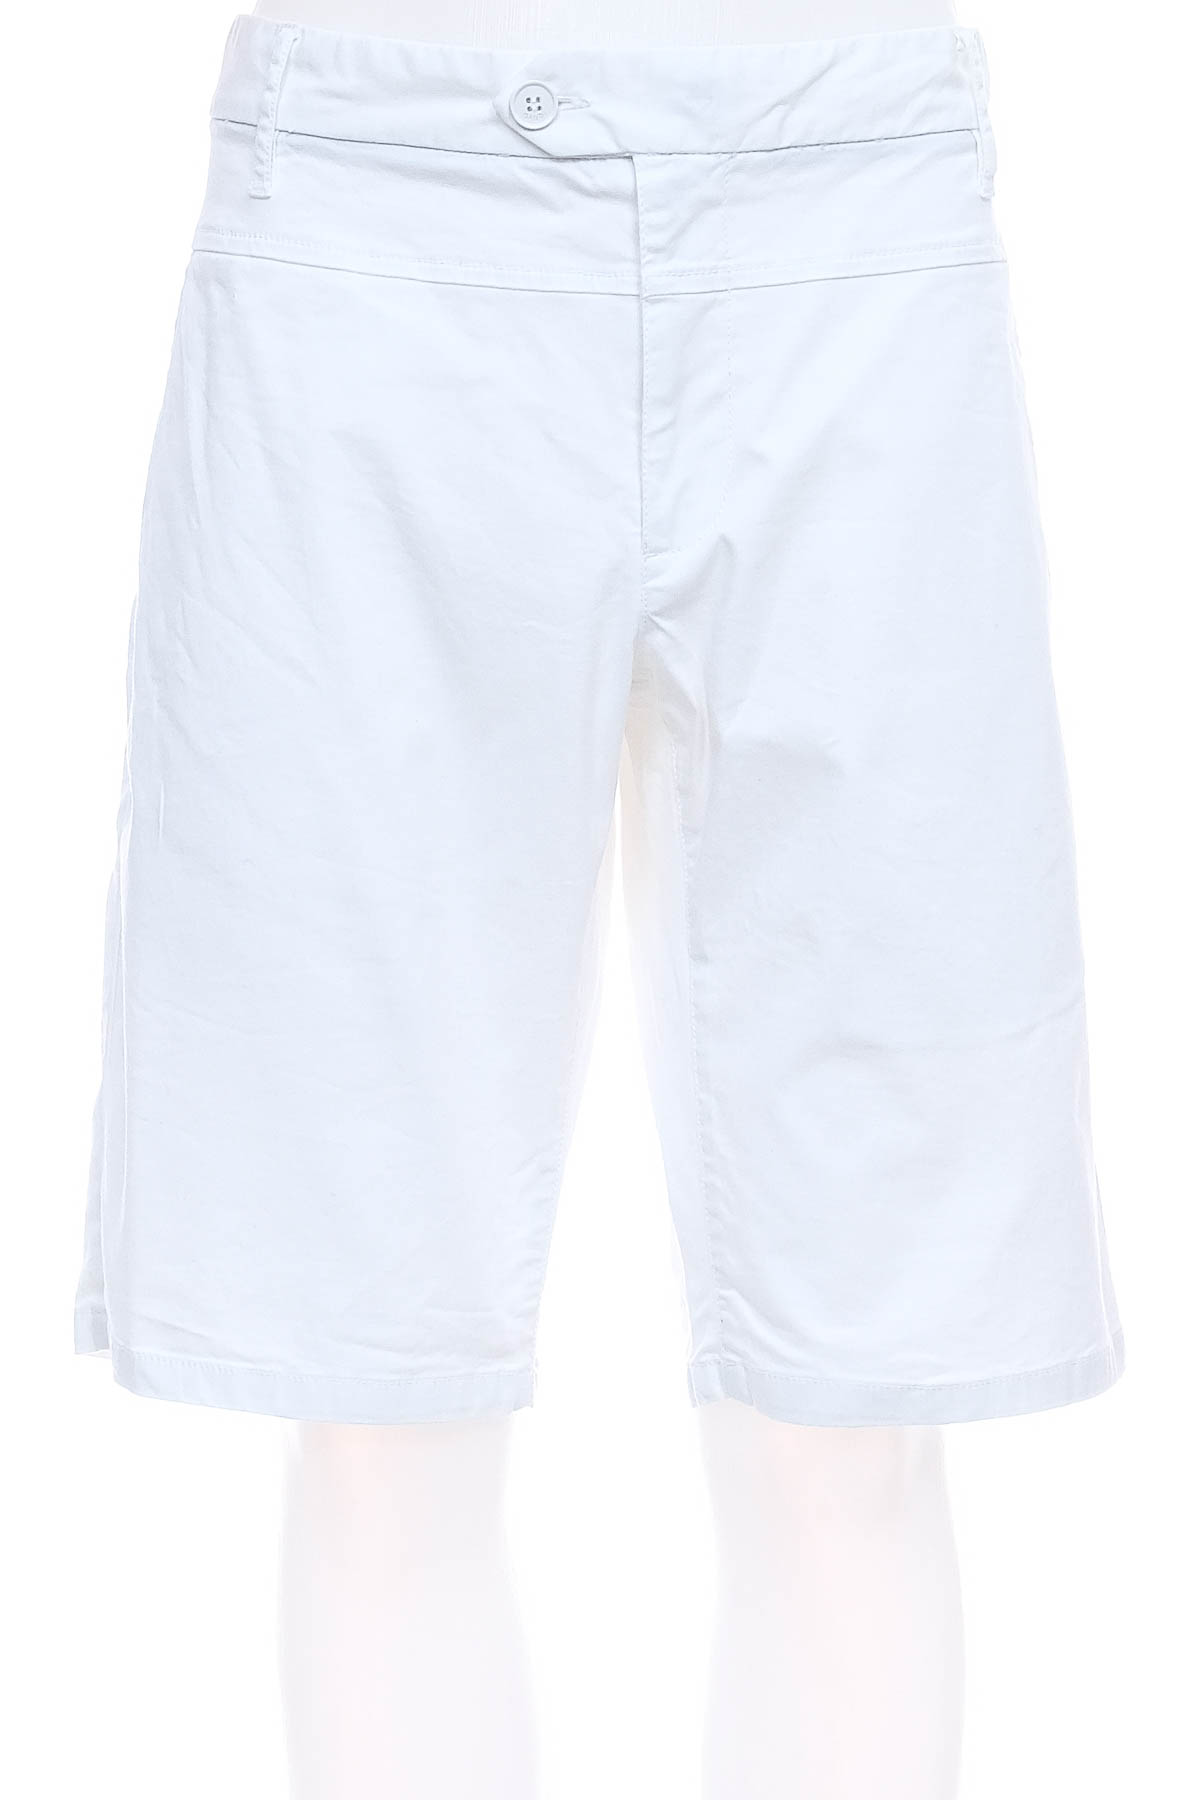 Men's shorts - Gaudi - 0